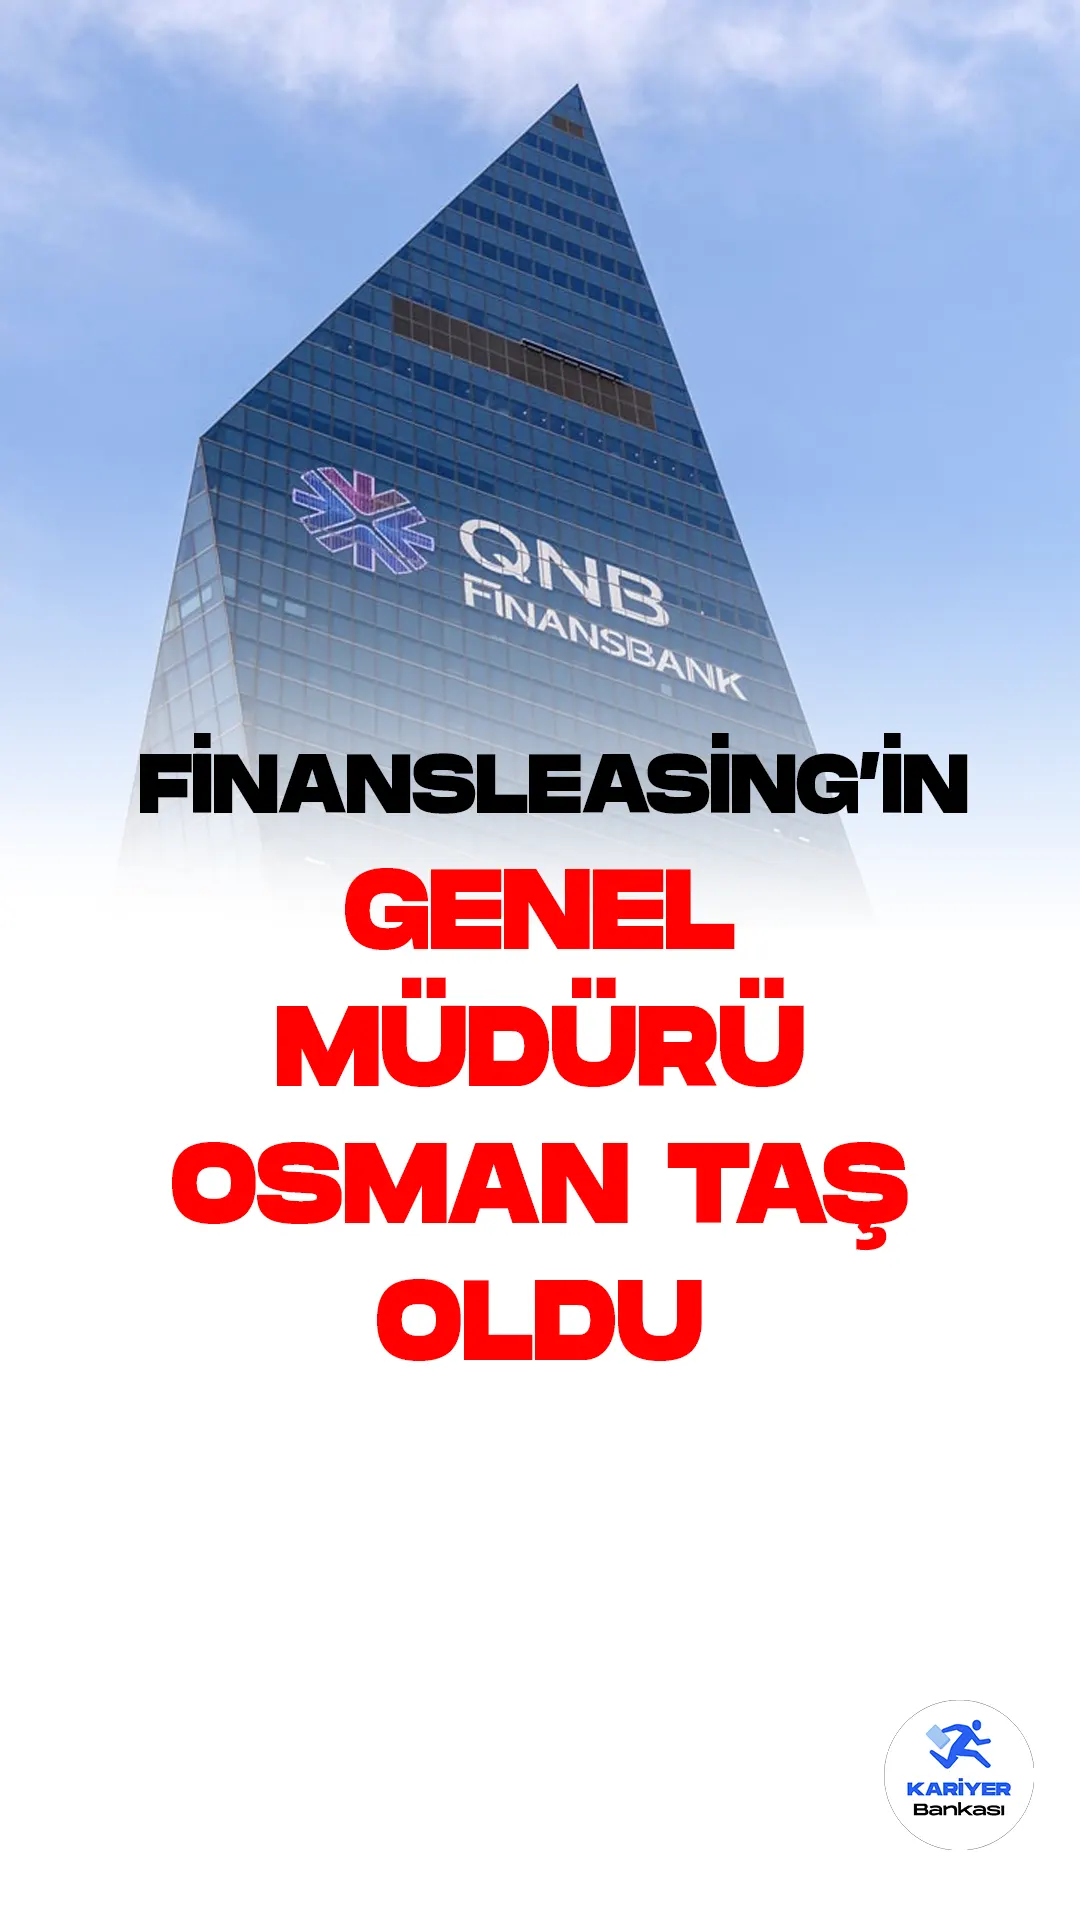 QNB Finansleasing'in yeni Genel Müdürü olarak atanan Osman Taş, daha önce QNB Finansbank Perakende Krediler Tahsis ve Politikalar Direktörü olarak görev yapıyordu.